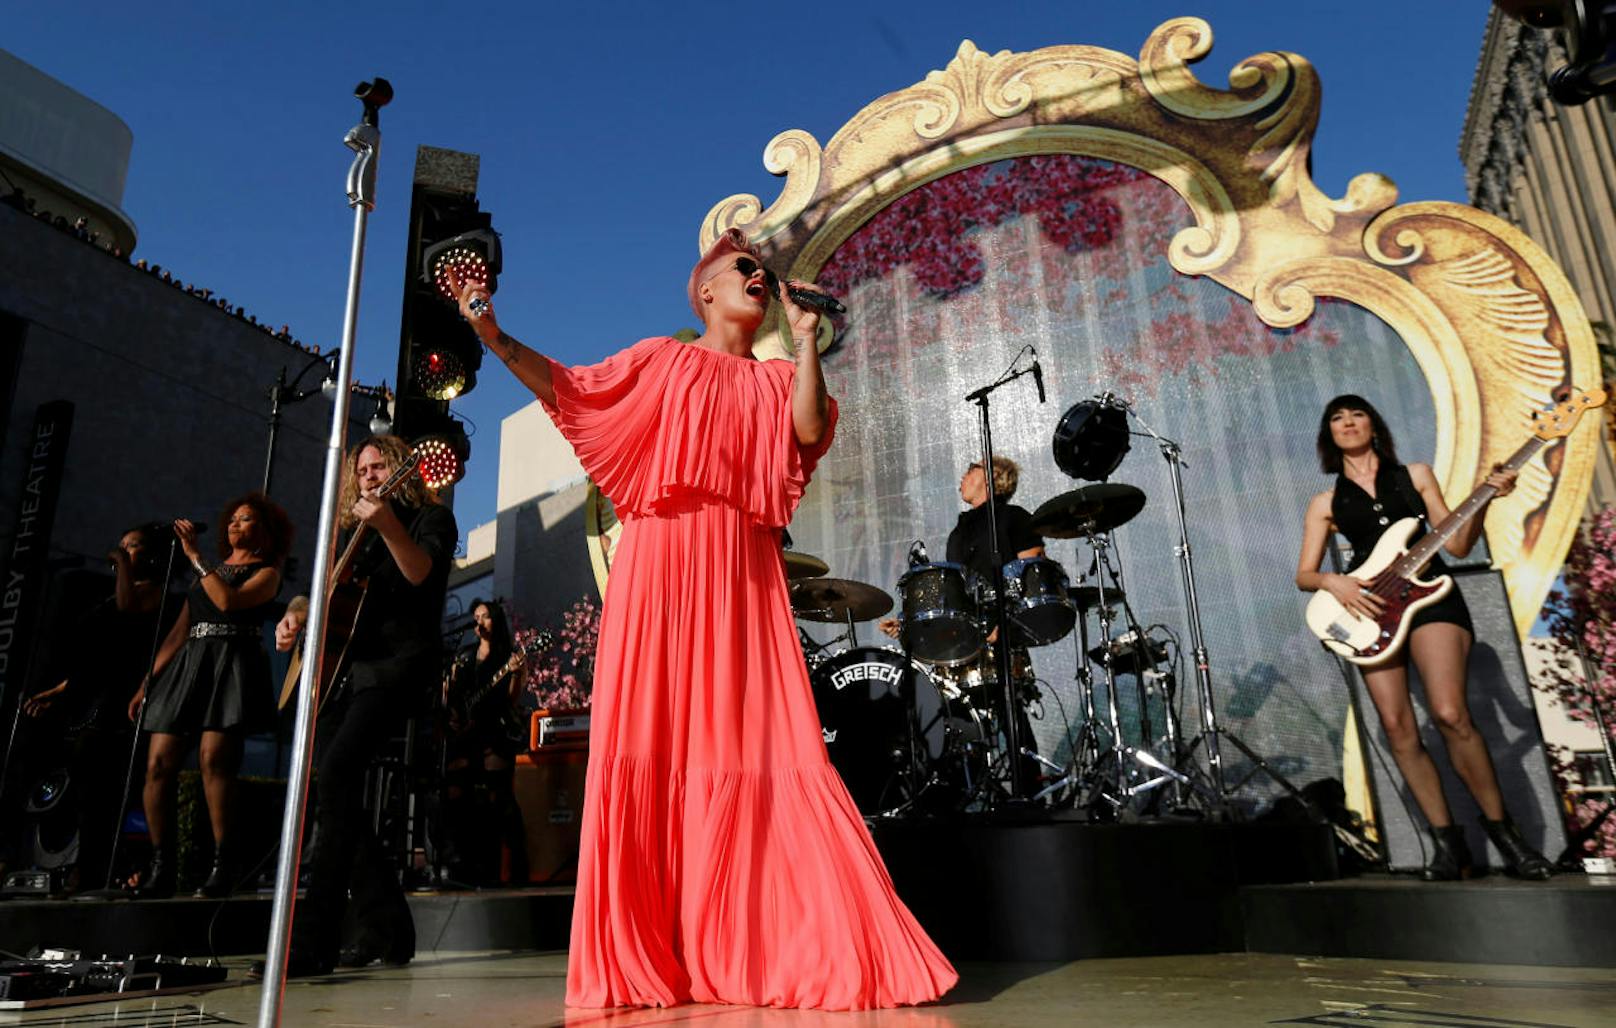 Pink performt bei der Premiere von "Alice Through the Looking Glass"